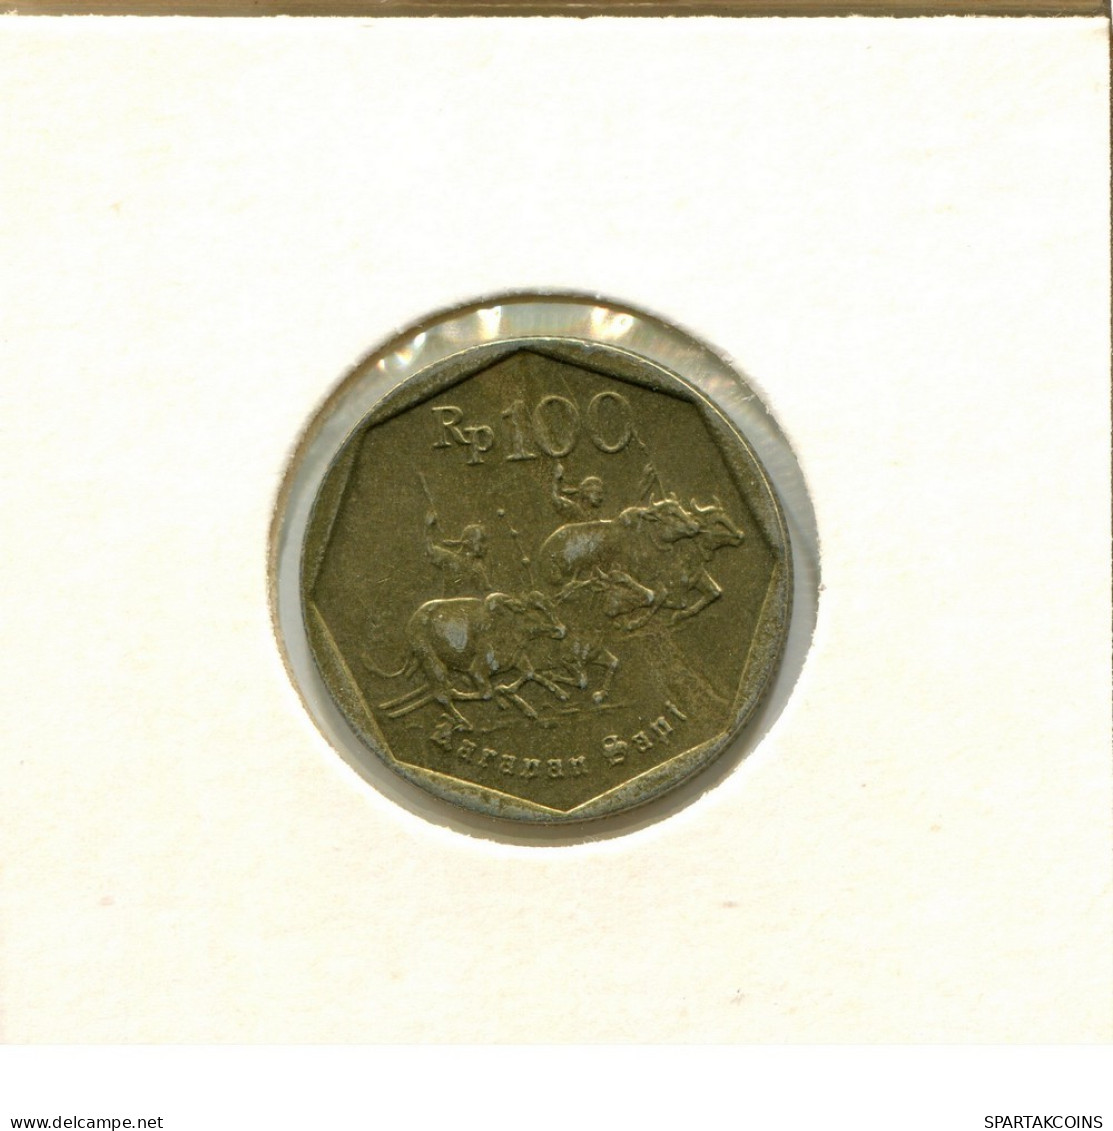 100 RUPIAH 1994 INDONESISCH INDONESIA Münze #AY882.D.A - Indonesien